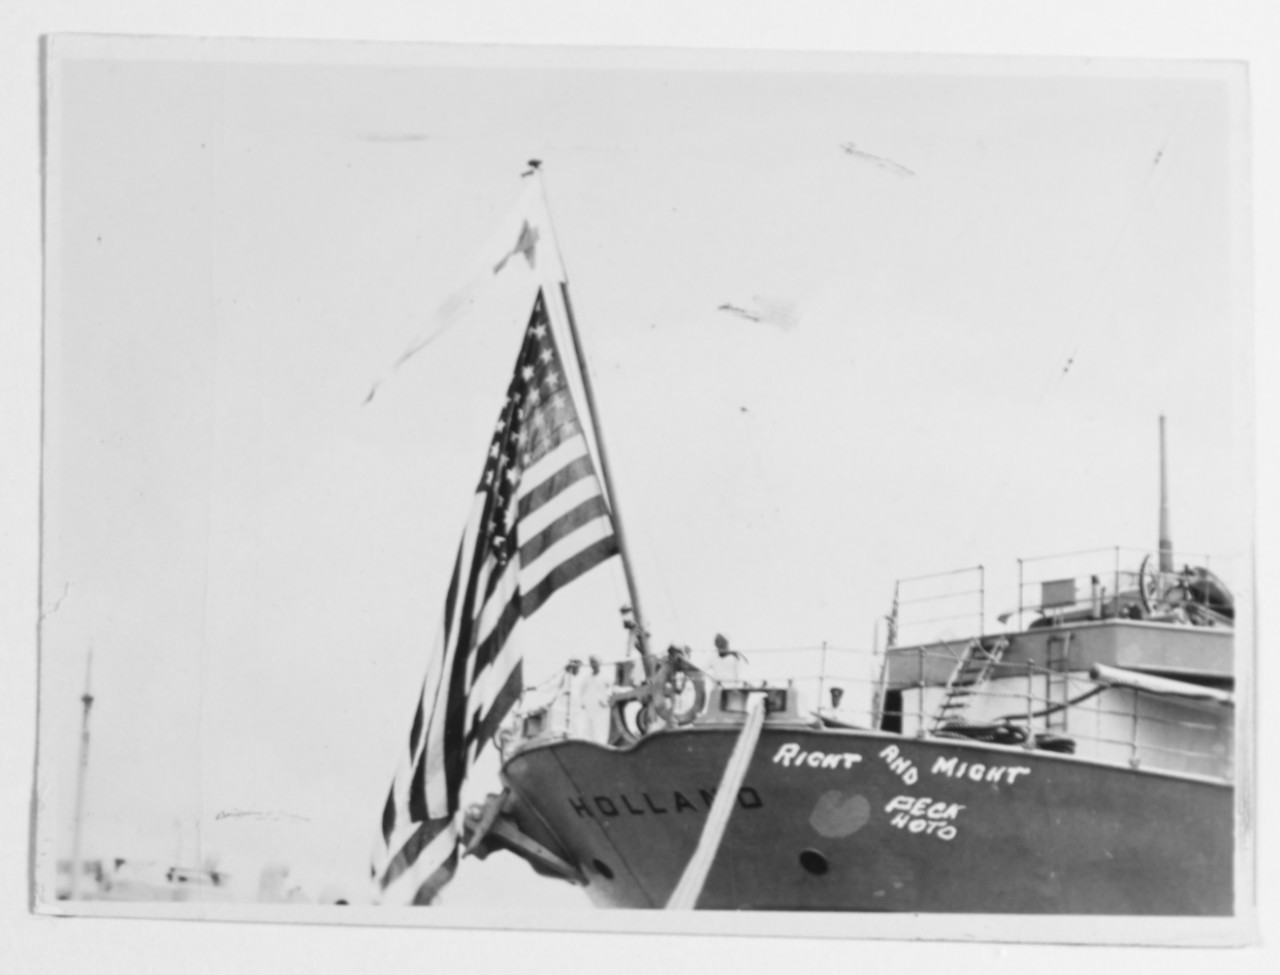 USS HOLAND (AS-3)